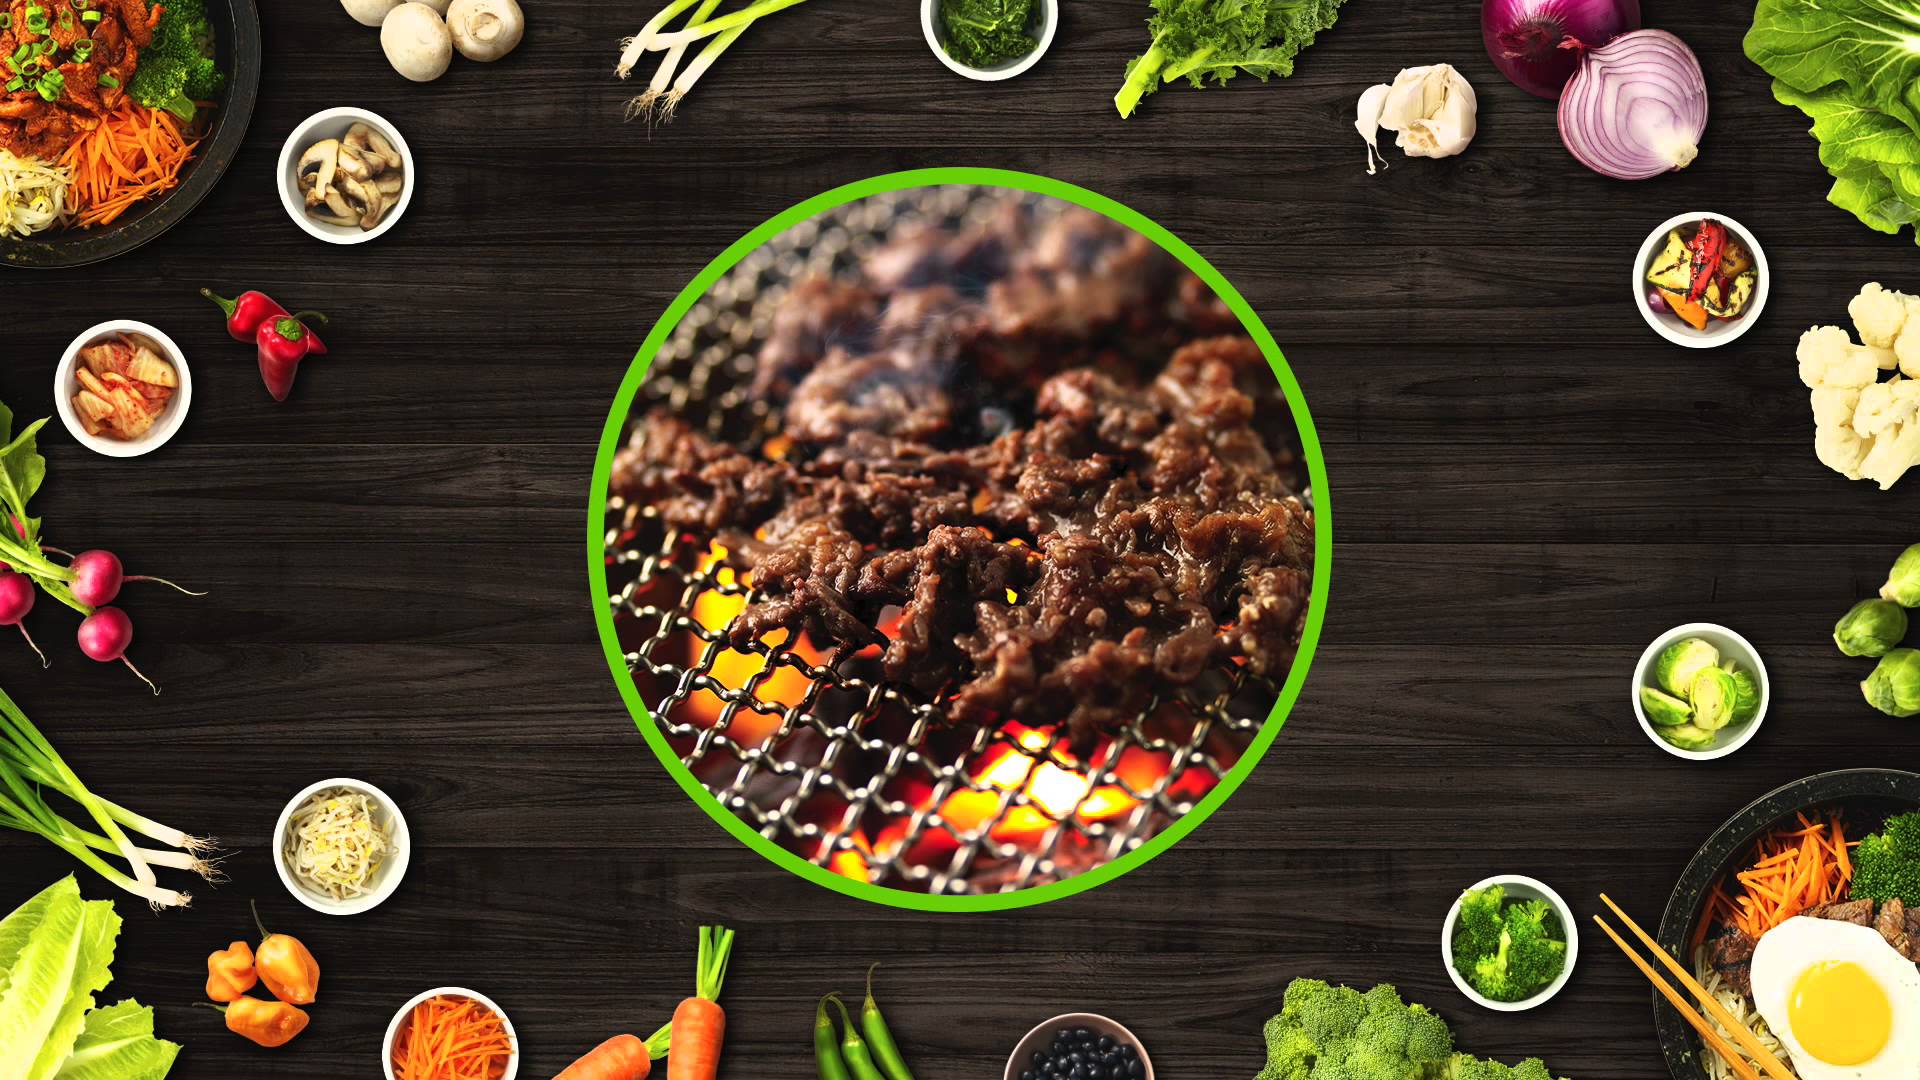 دانلود تابلوی خام رستوران با طرح اشتها آور از غذای گوشتی آتیشی